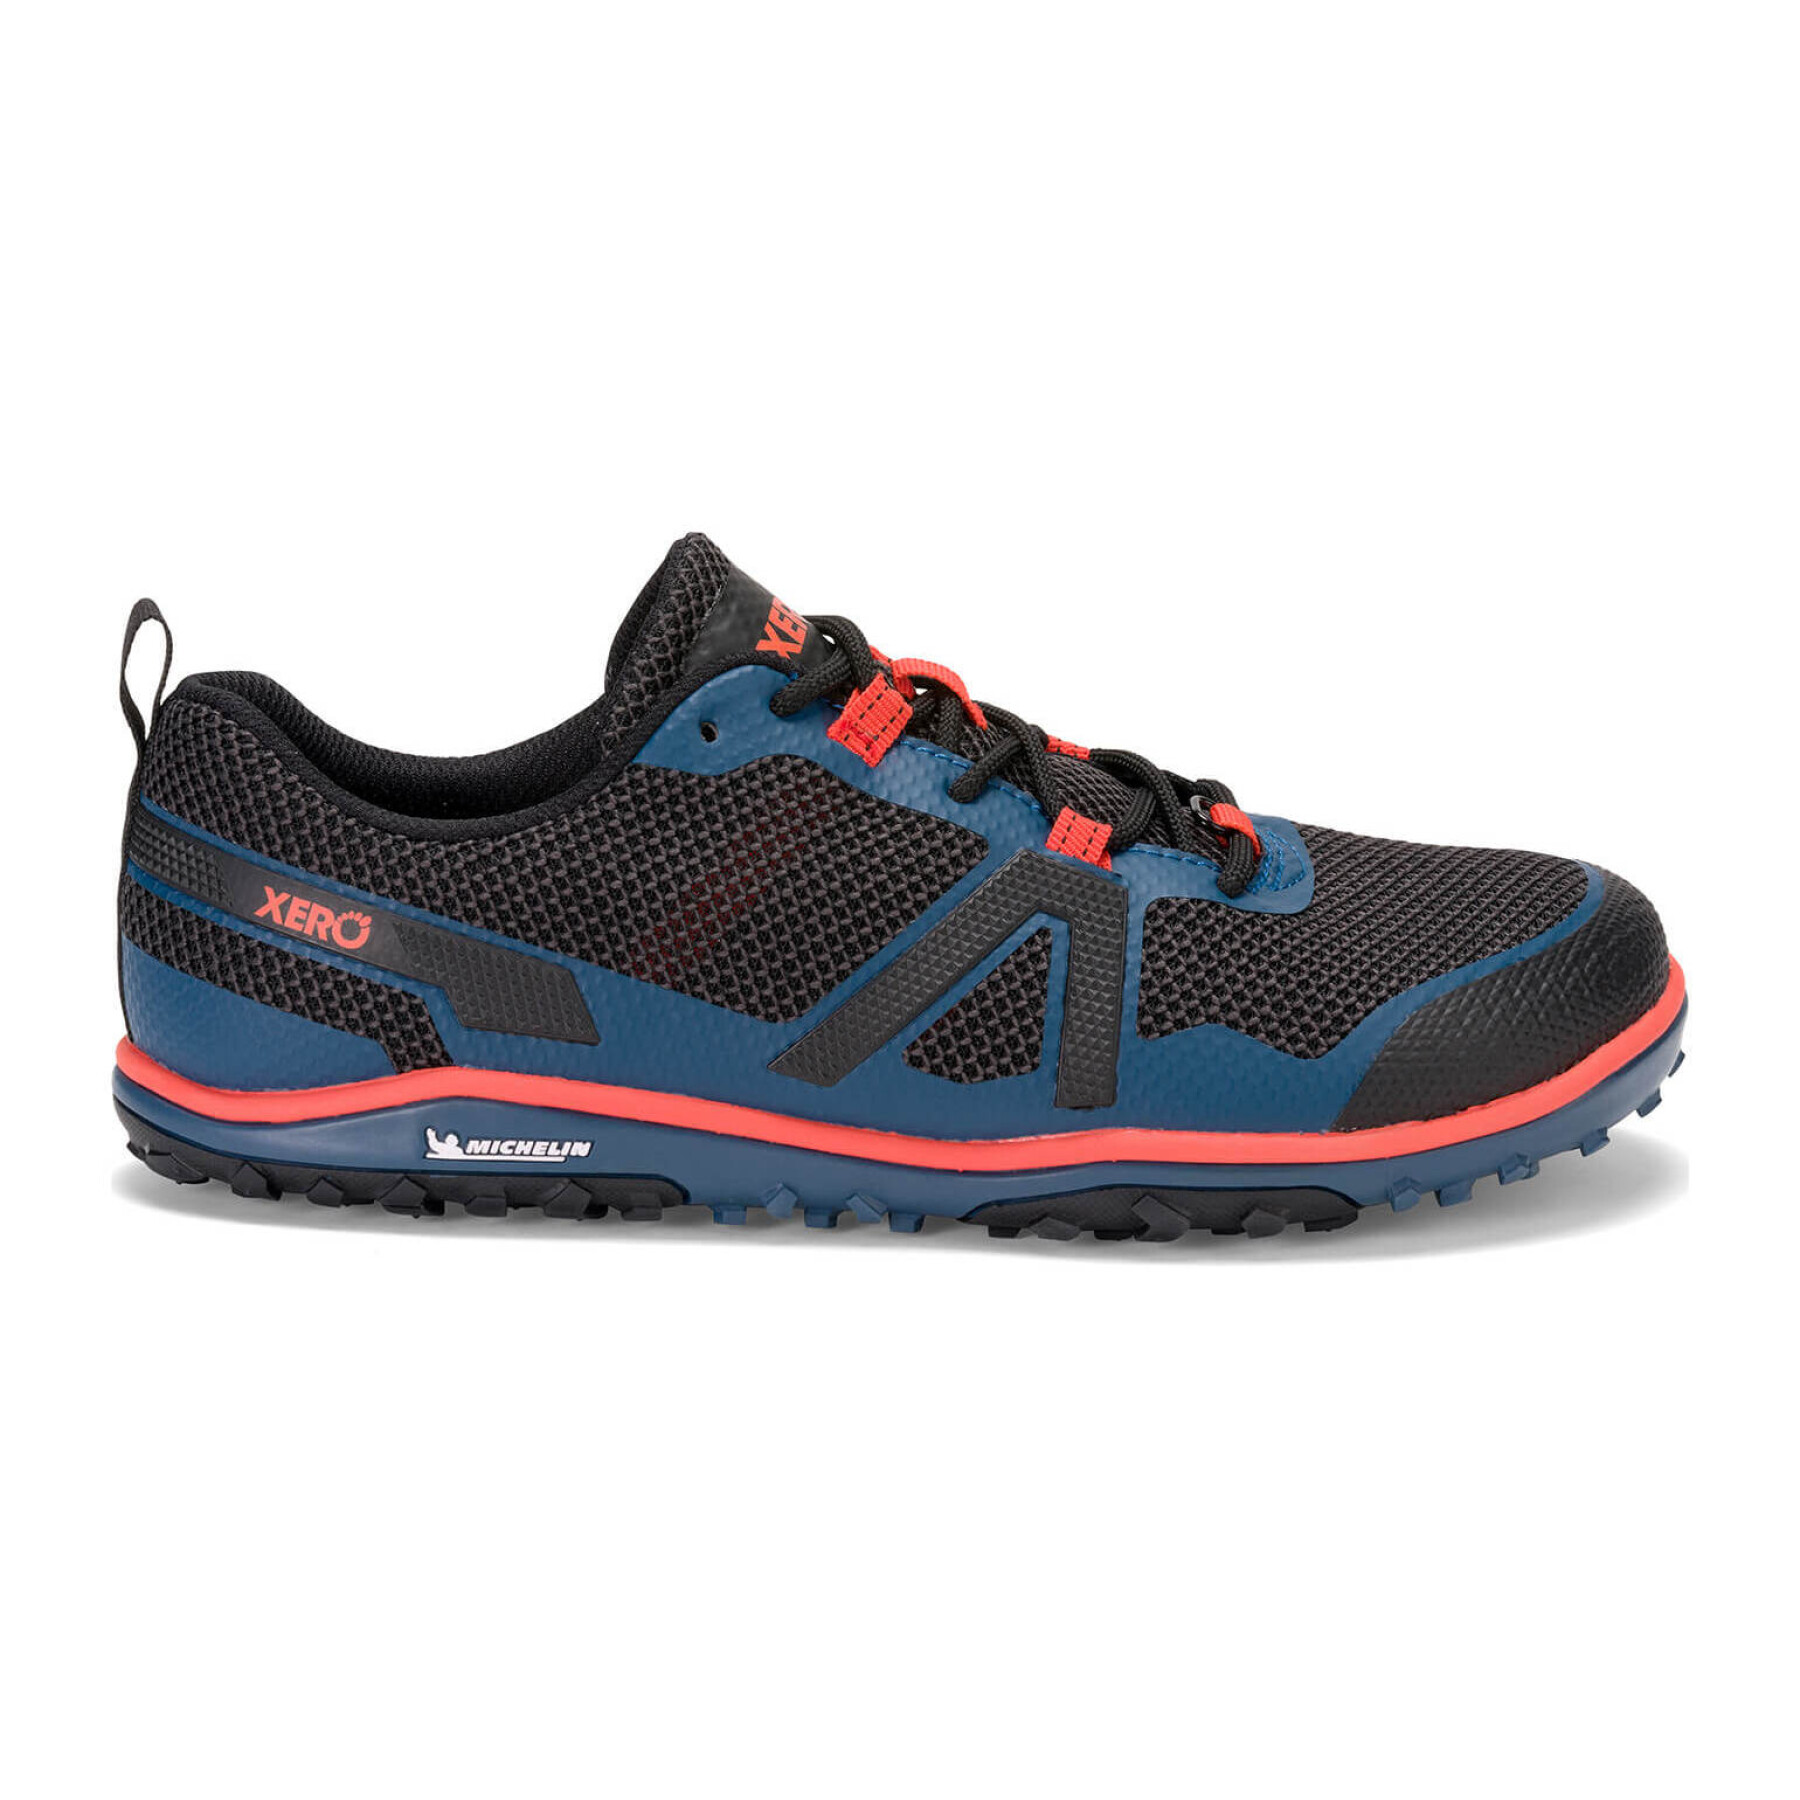 Trail running shoes Xero Shoes Scrambler Low